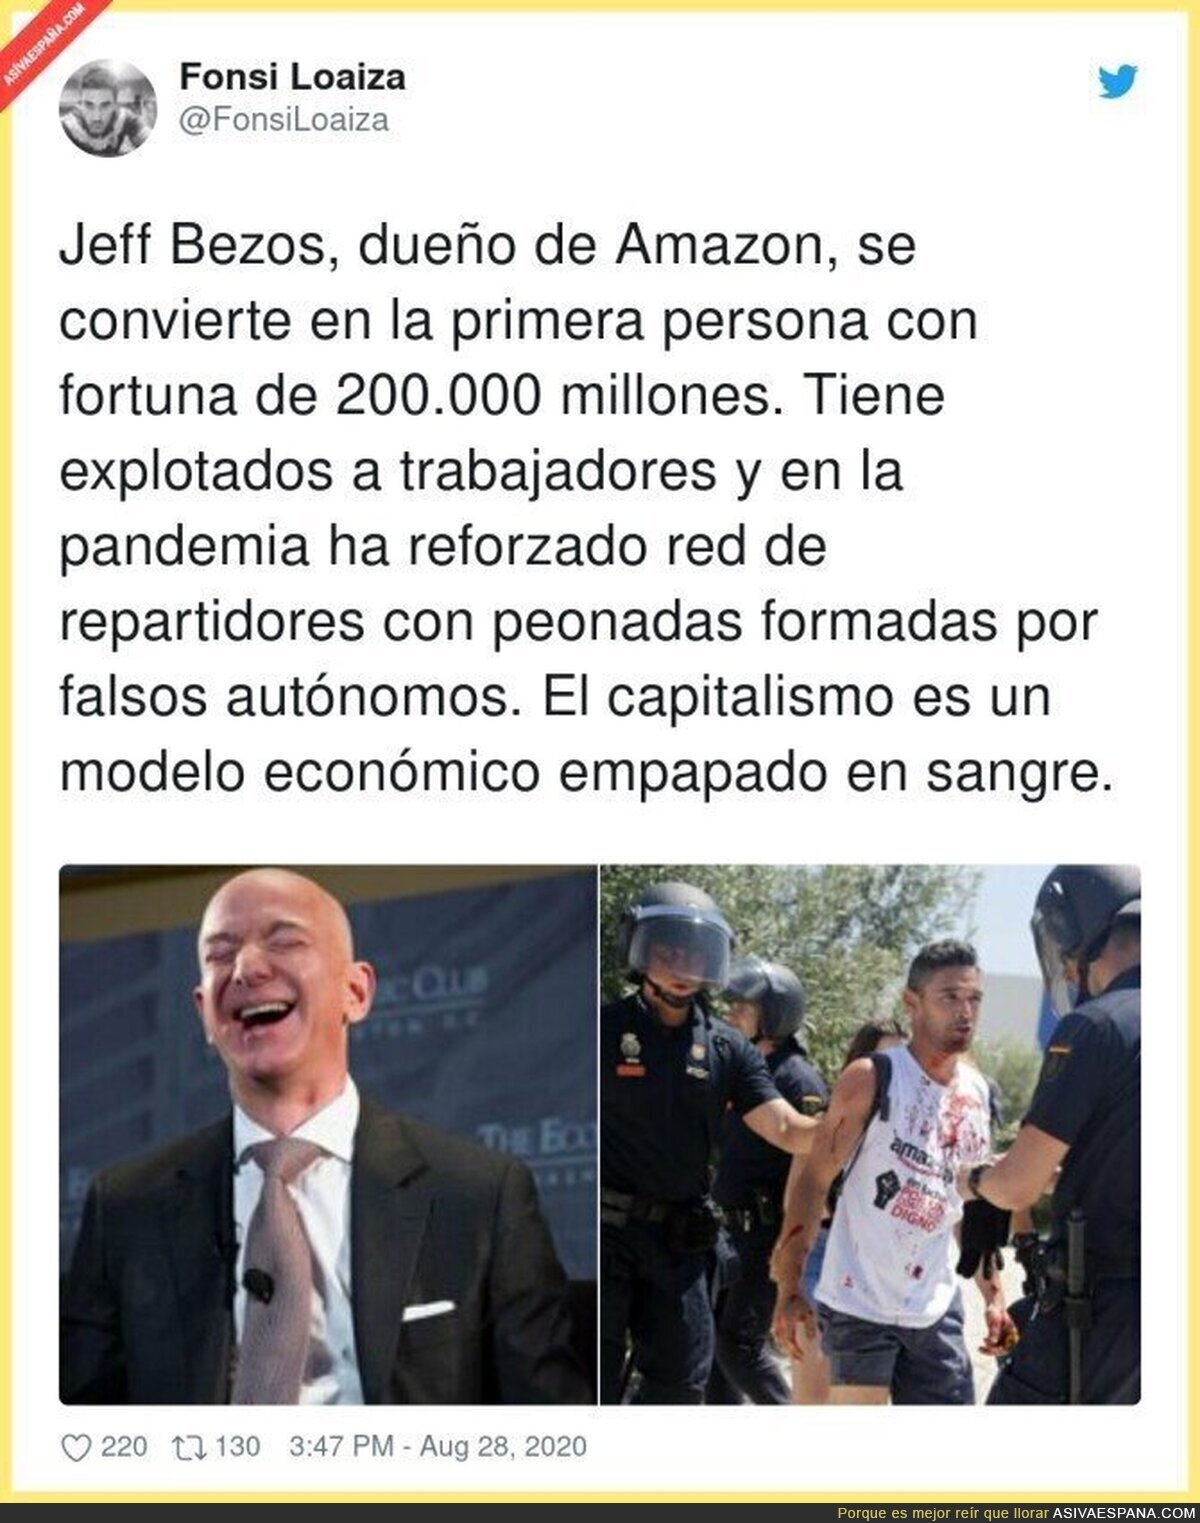 El modelo de negocio de Jeff Bezos